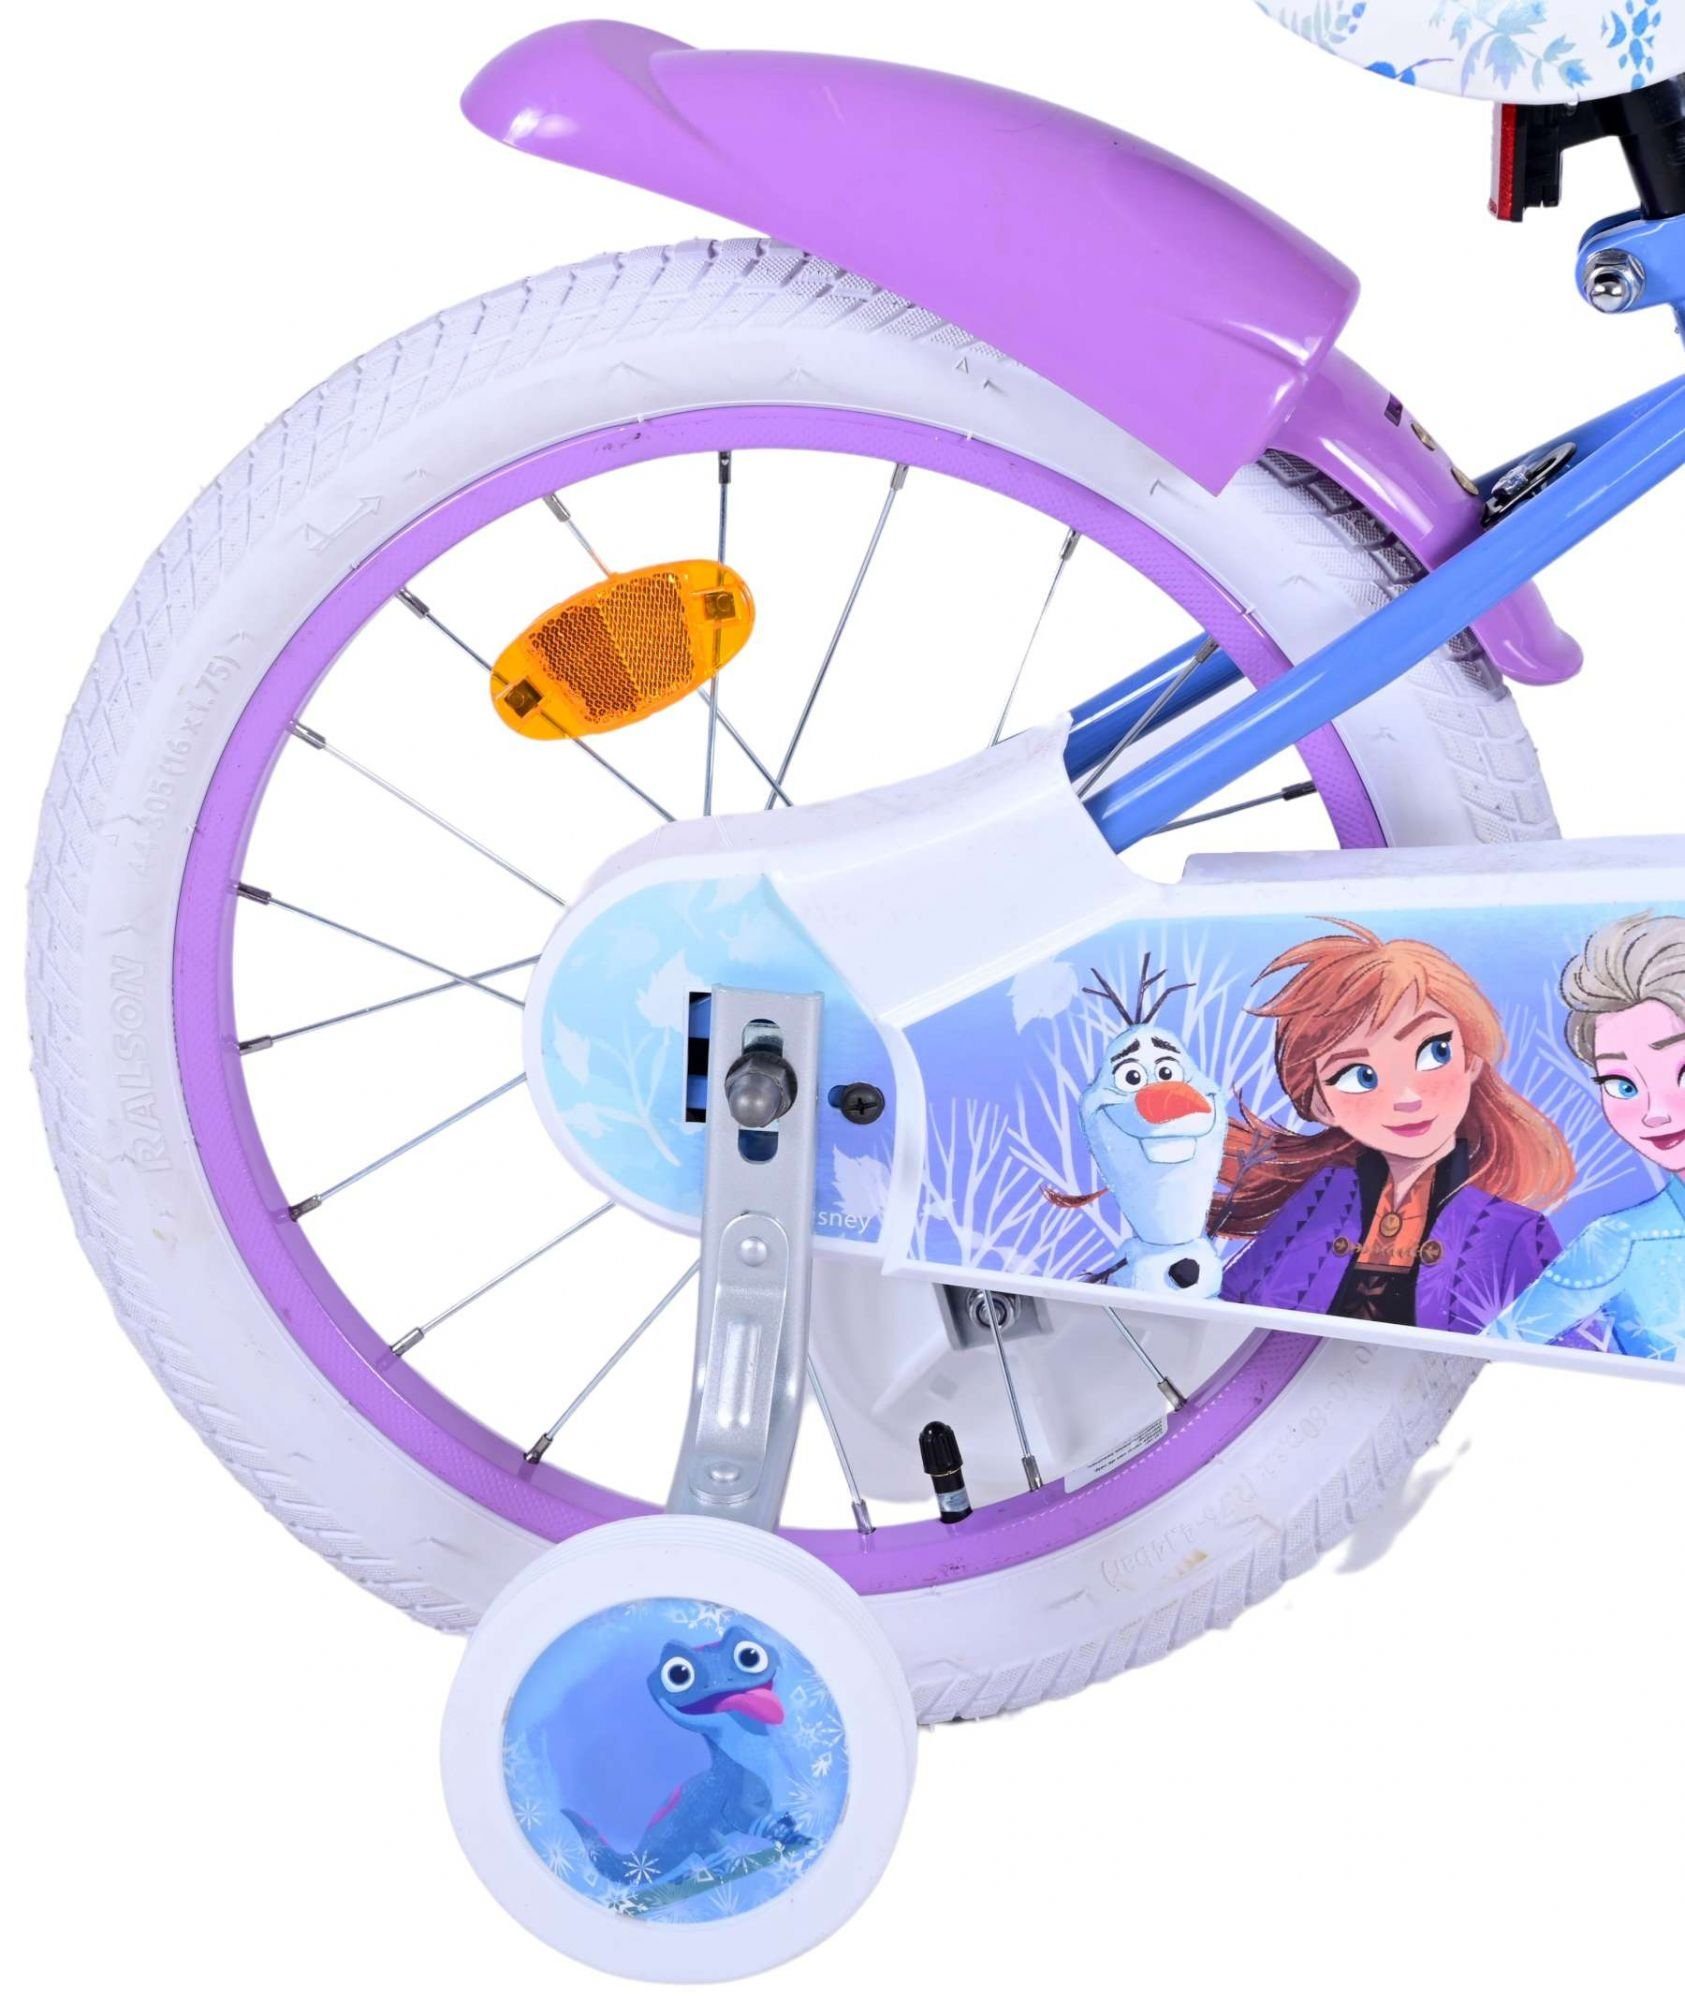 Rücktritt Zoll Fahrrad Handbremse, (Mädchen 2 Laufrad mit Sicherheitsgriffe), 16 mit Mädchen Kinderrad Fahrrad + Kinderfahrrad TPFSports Kinder - Disney 1 Rutschfeste Frozen Stützräder Gang,